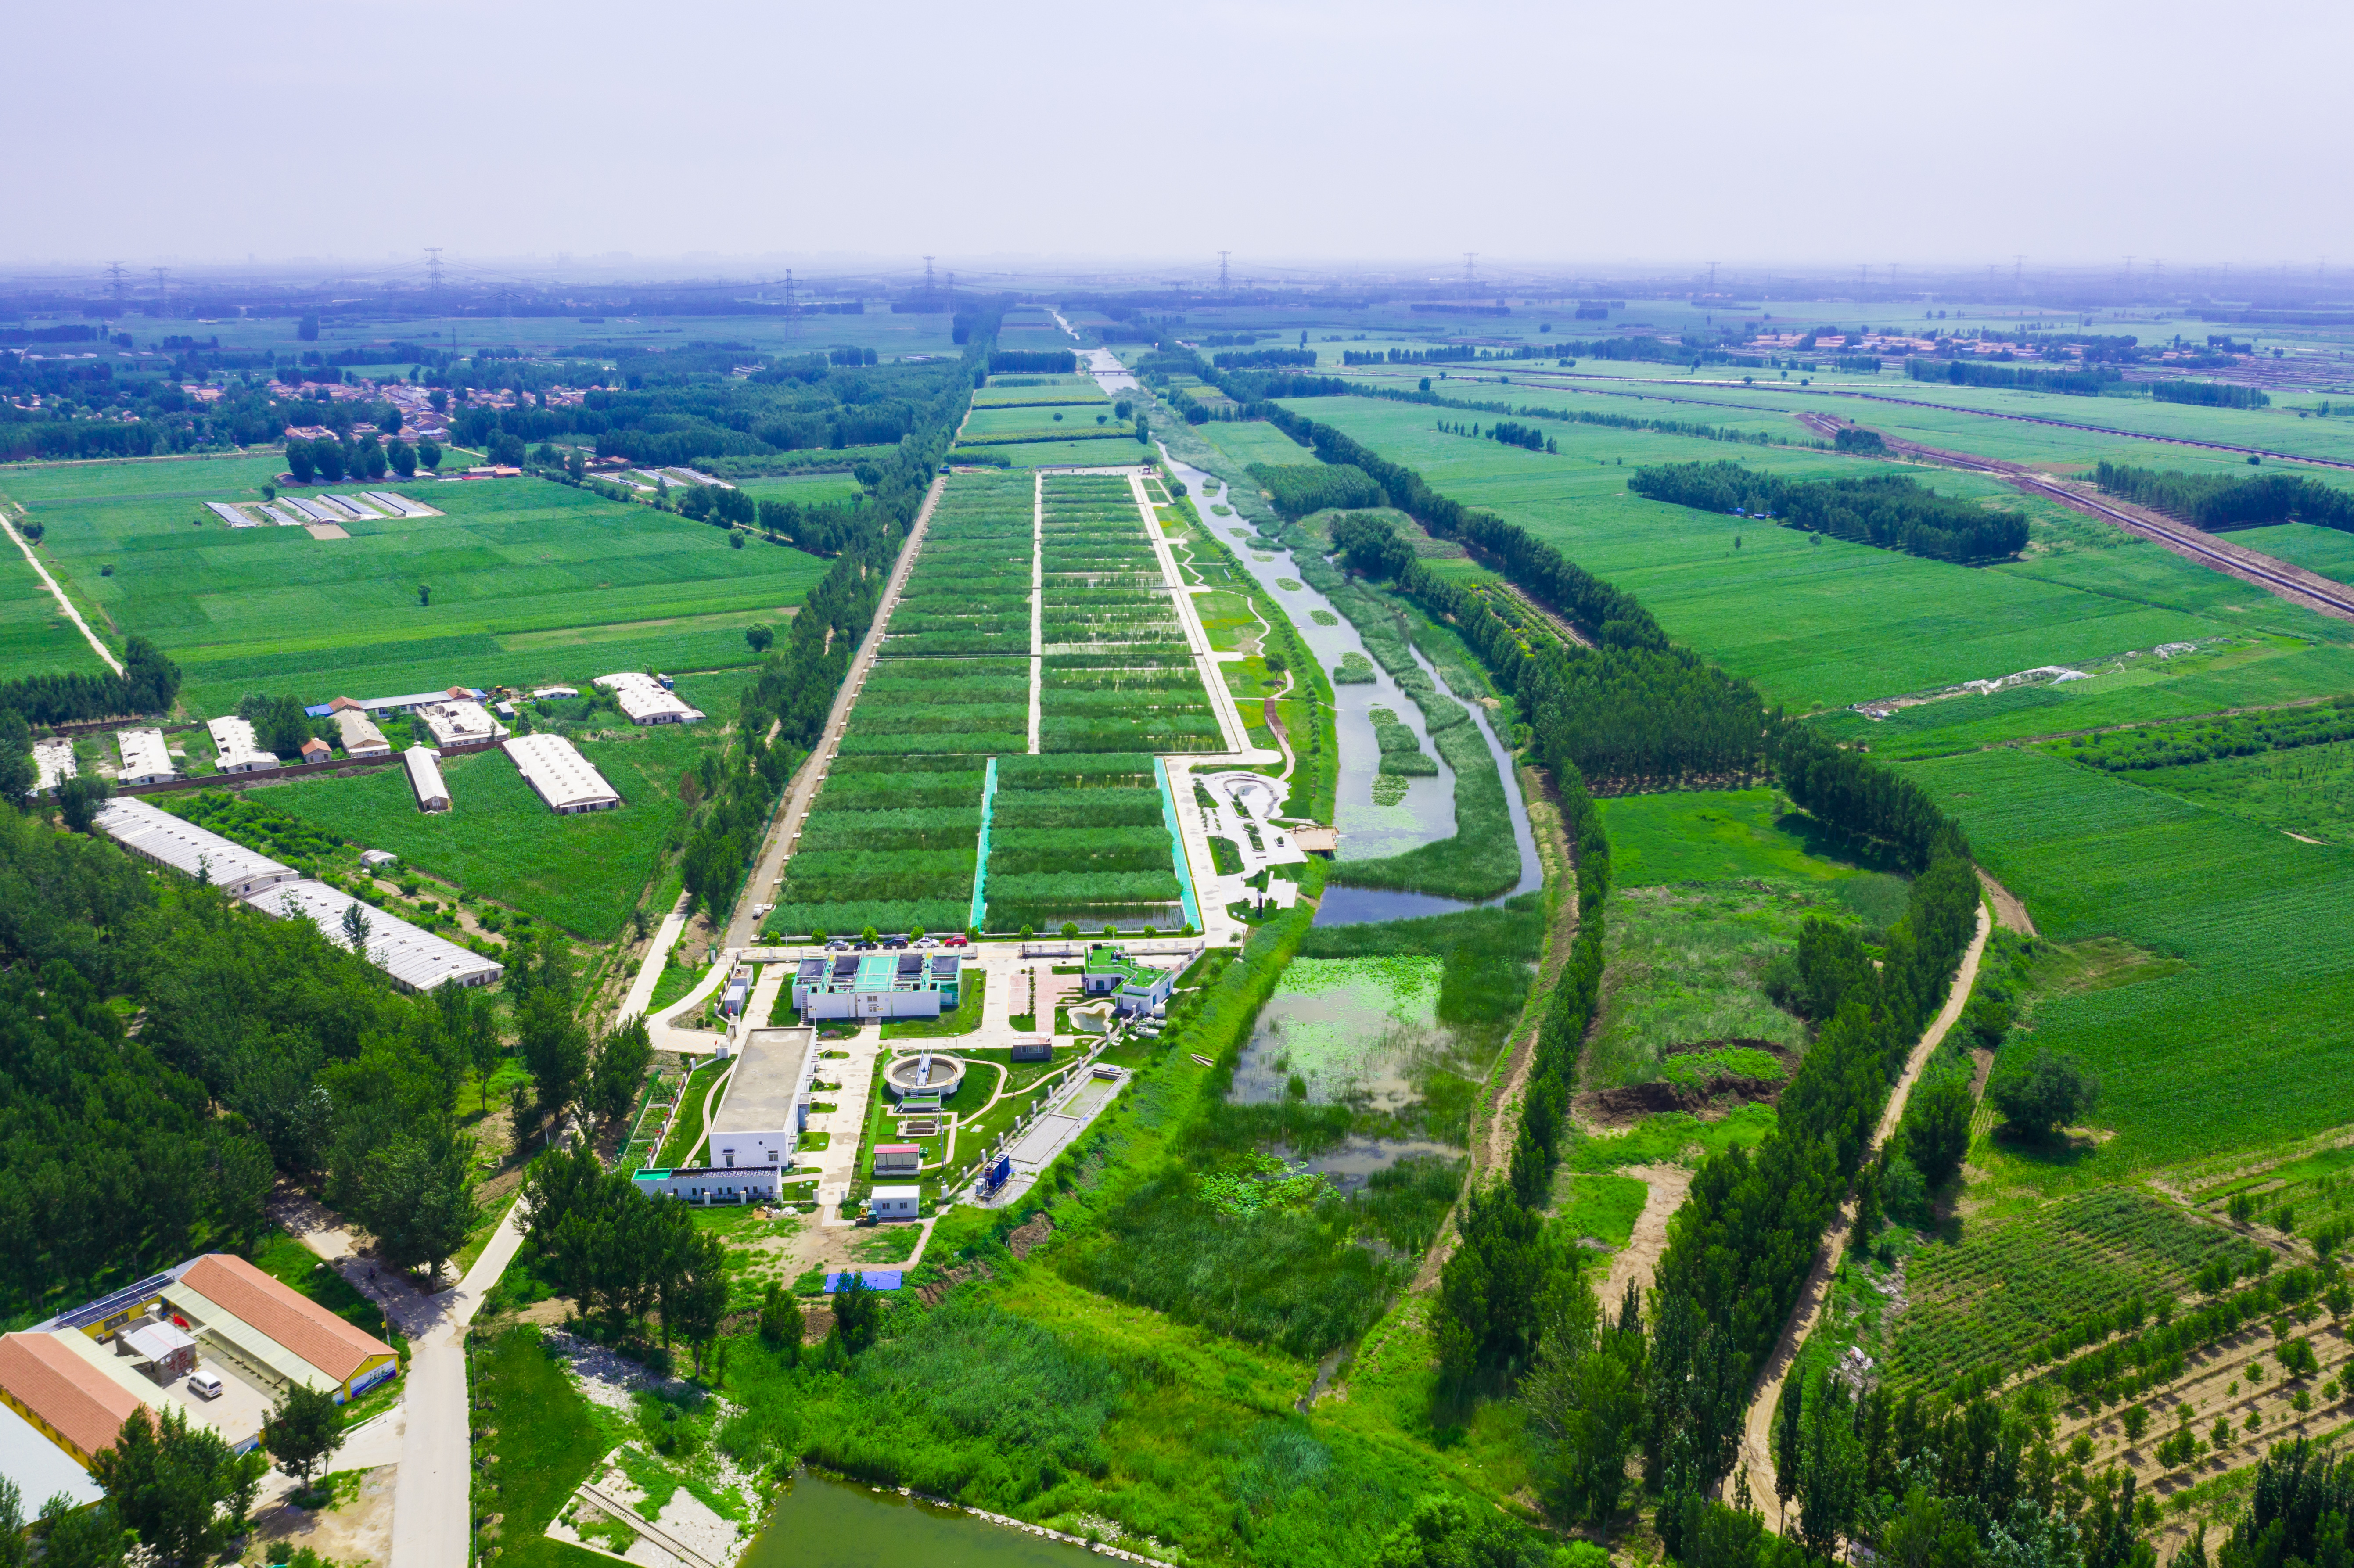 20211203-环境学院牵头承担的“十三五”水专项京津冀版块廊坊项目通过综合绩效评价-拍摄者不详-龙河人工湿地示范工程实景图.jpg